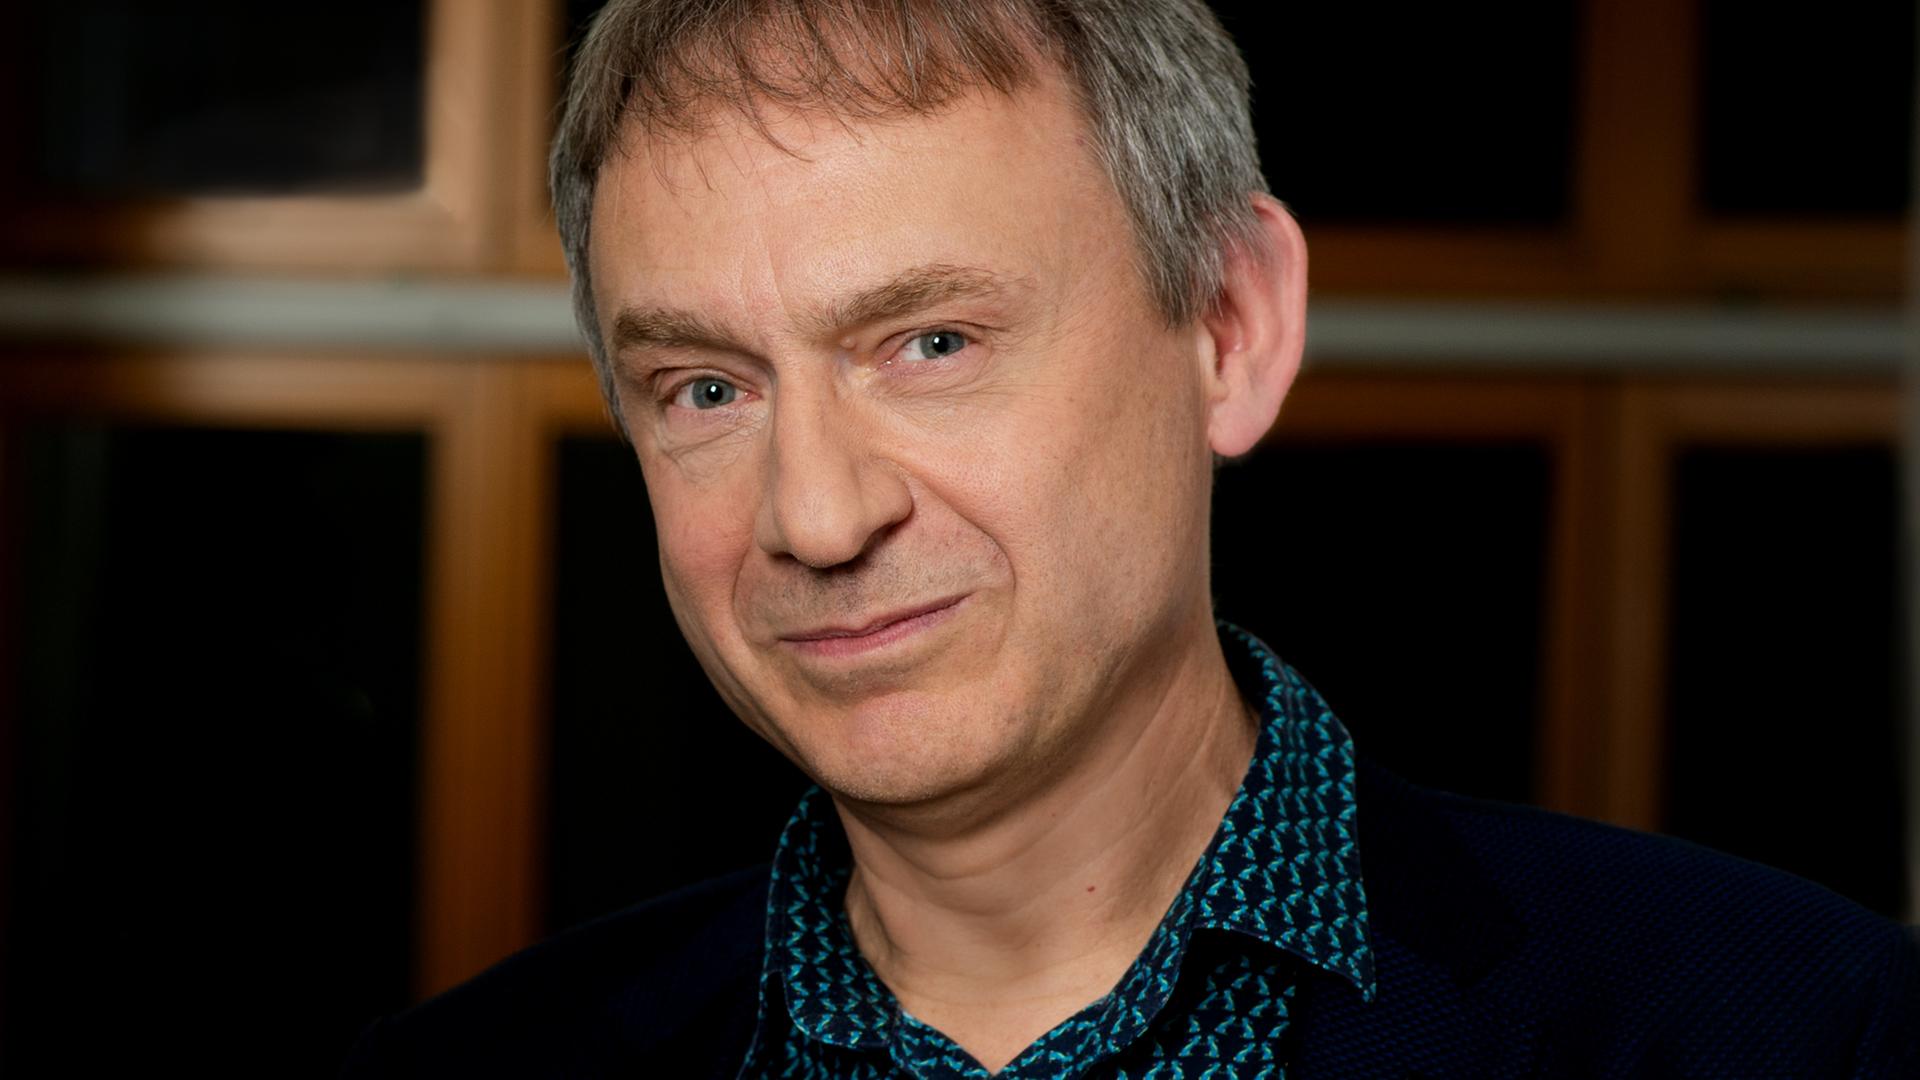 Porträt von Erik D. Schulz, Arzt und Schriftsteller.